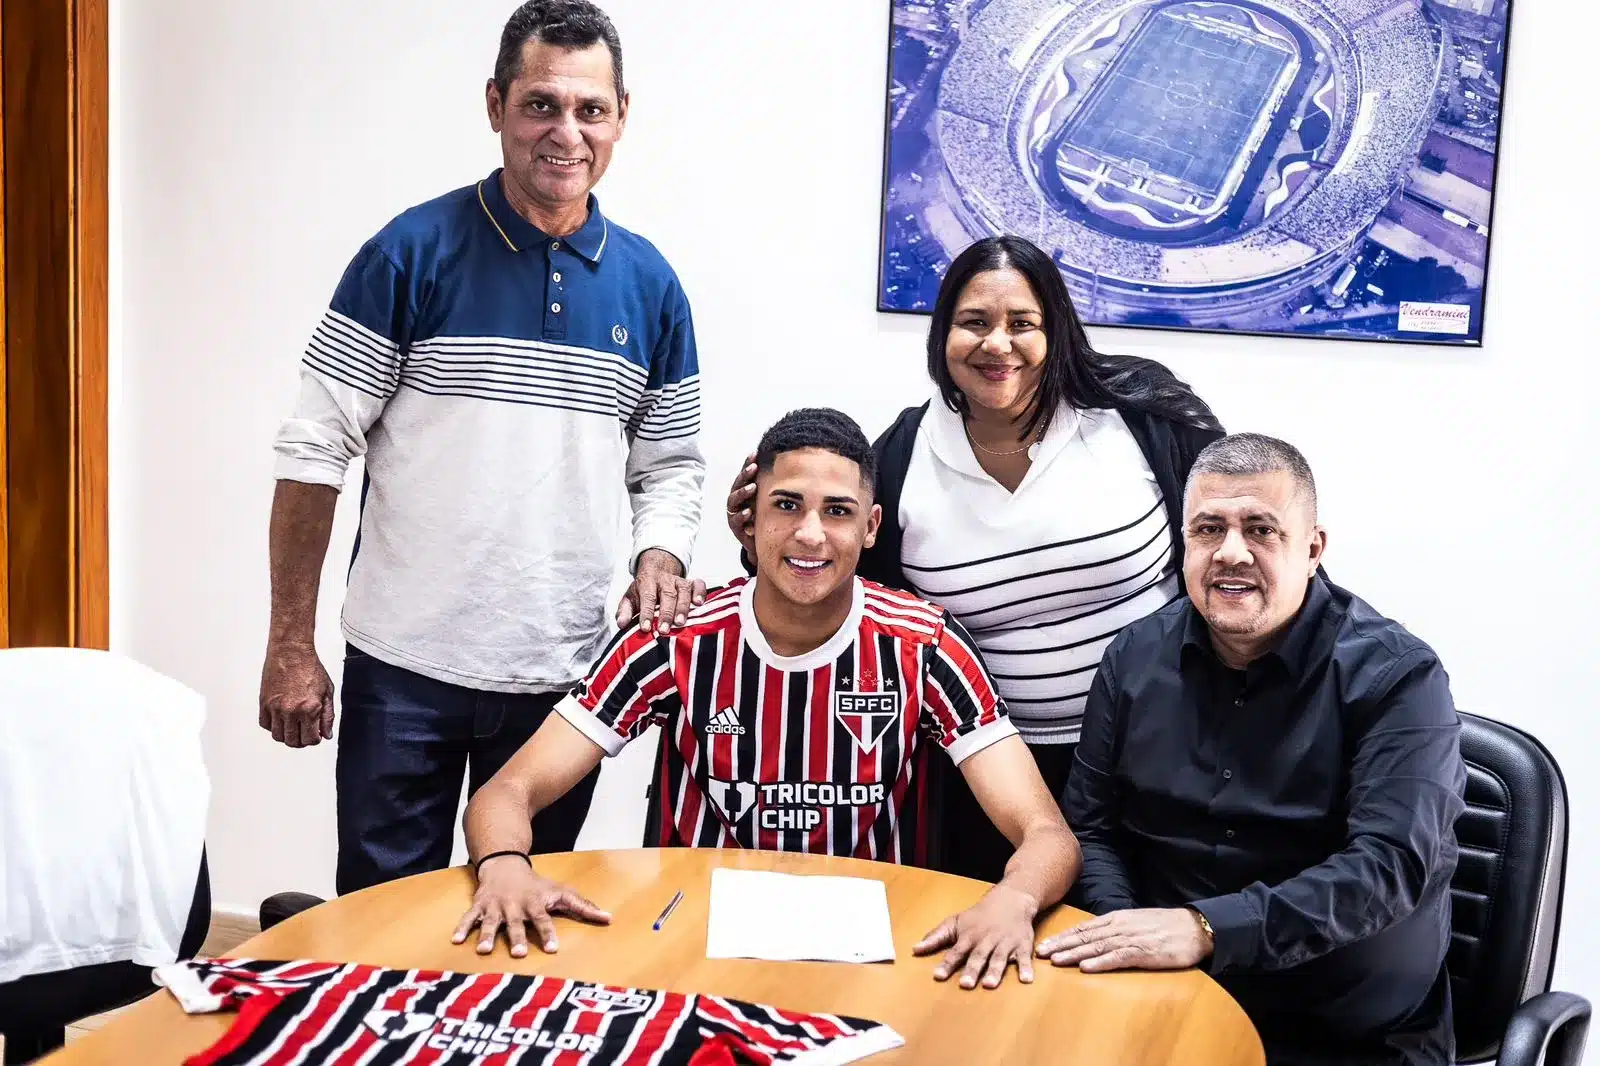 Rickelme, lateral do sub-17, assina contrato com o São Paulo com multa milionária